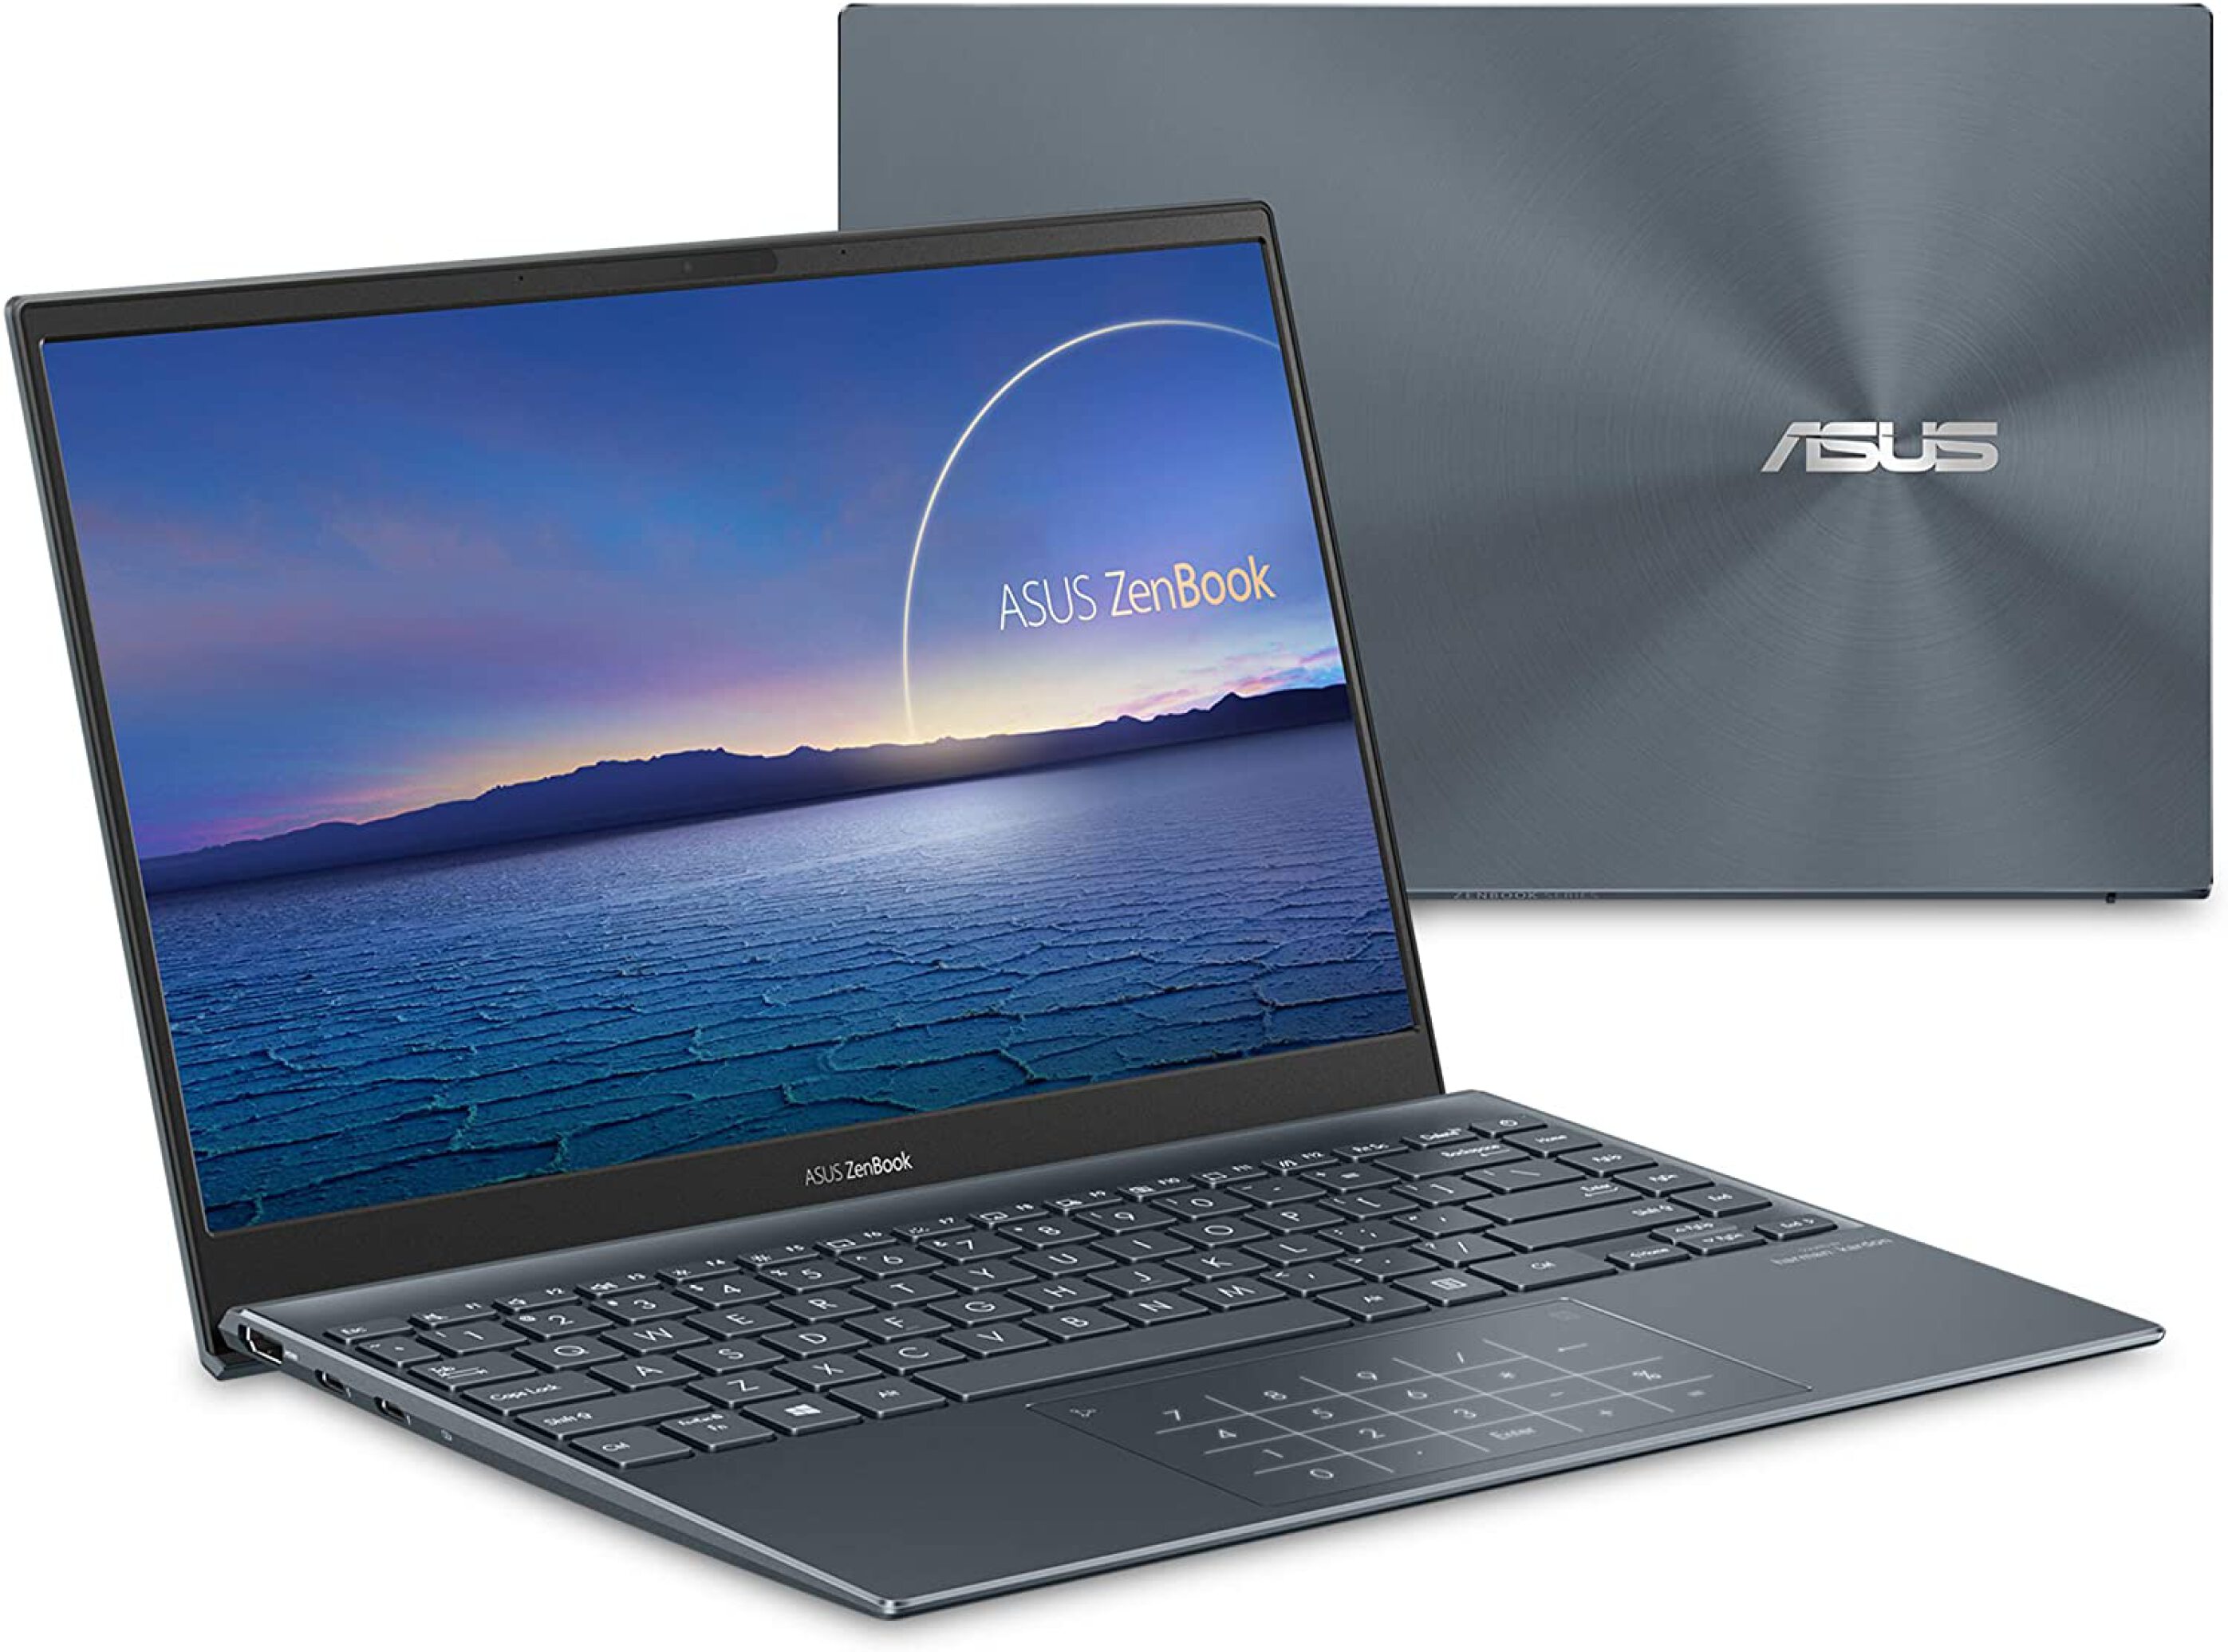  ASUS ZenBook UX325EA - KG239 i7 - 16GB 